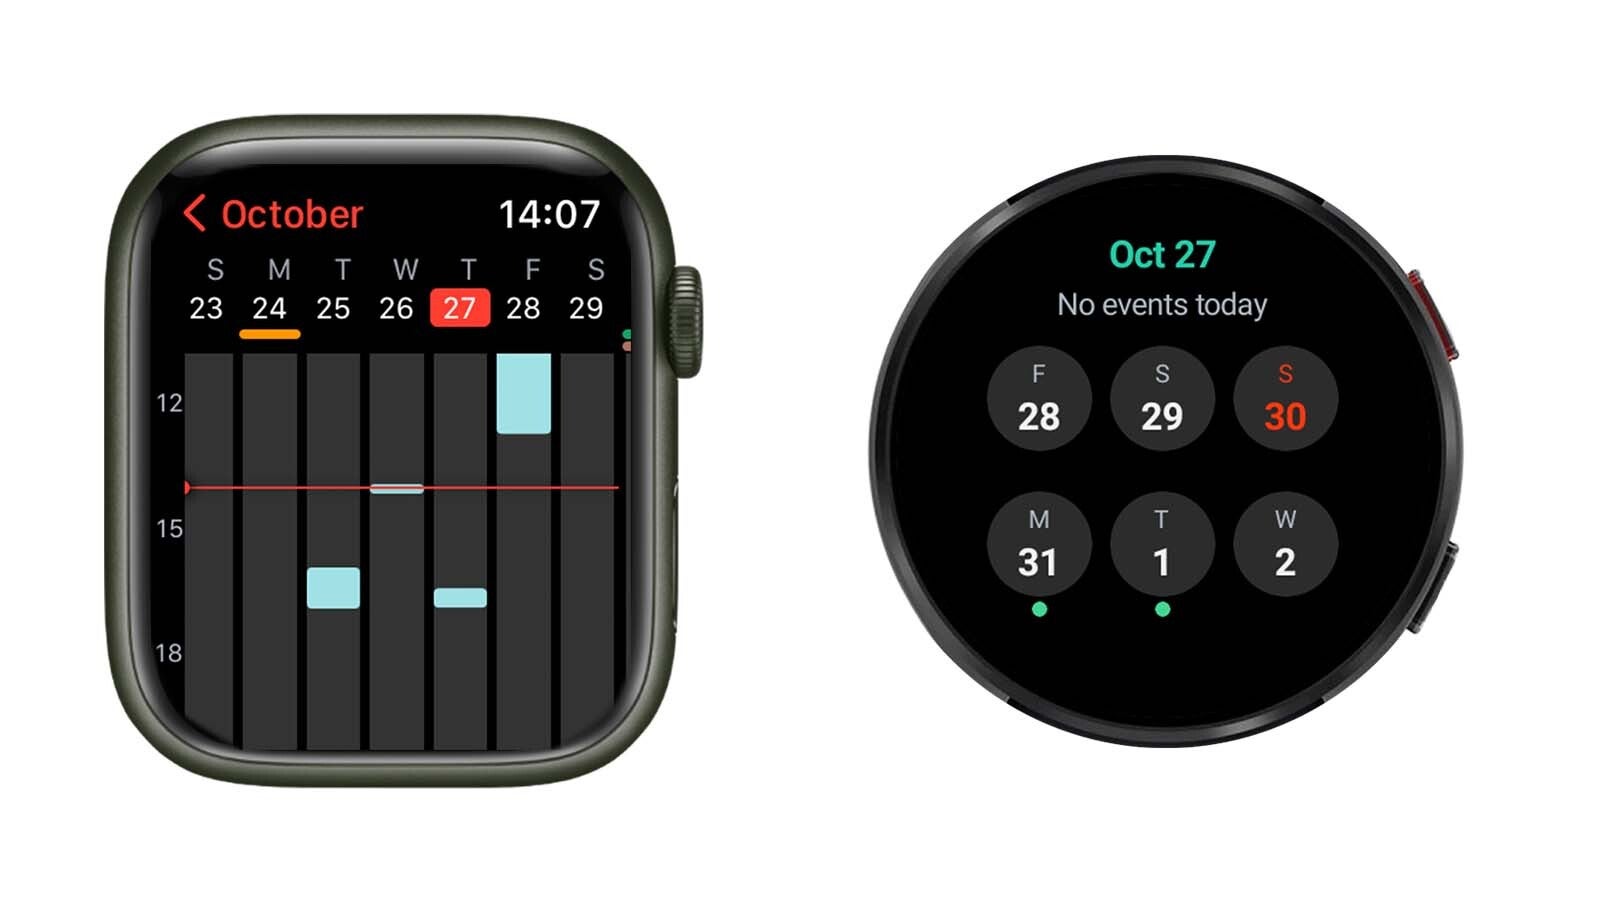 Comparaison de l'interface Apple Watch vs Samsung Galaxy Watch - Les smartwatches rondes sont-elles terriblement peu pratiques ?  Pourquoi l'Apple Watch rectangulaire a bien plus de sens